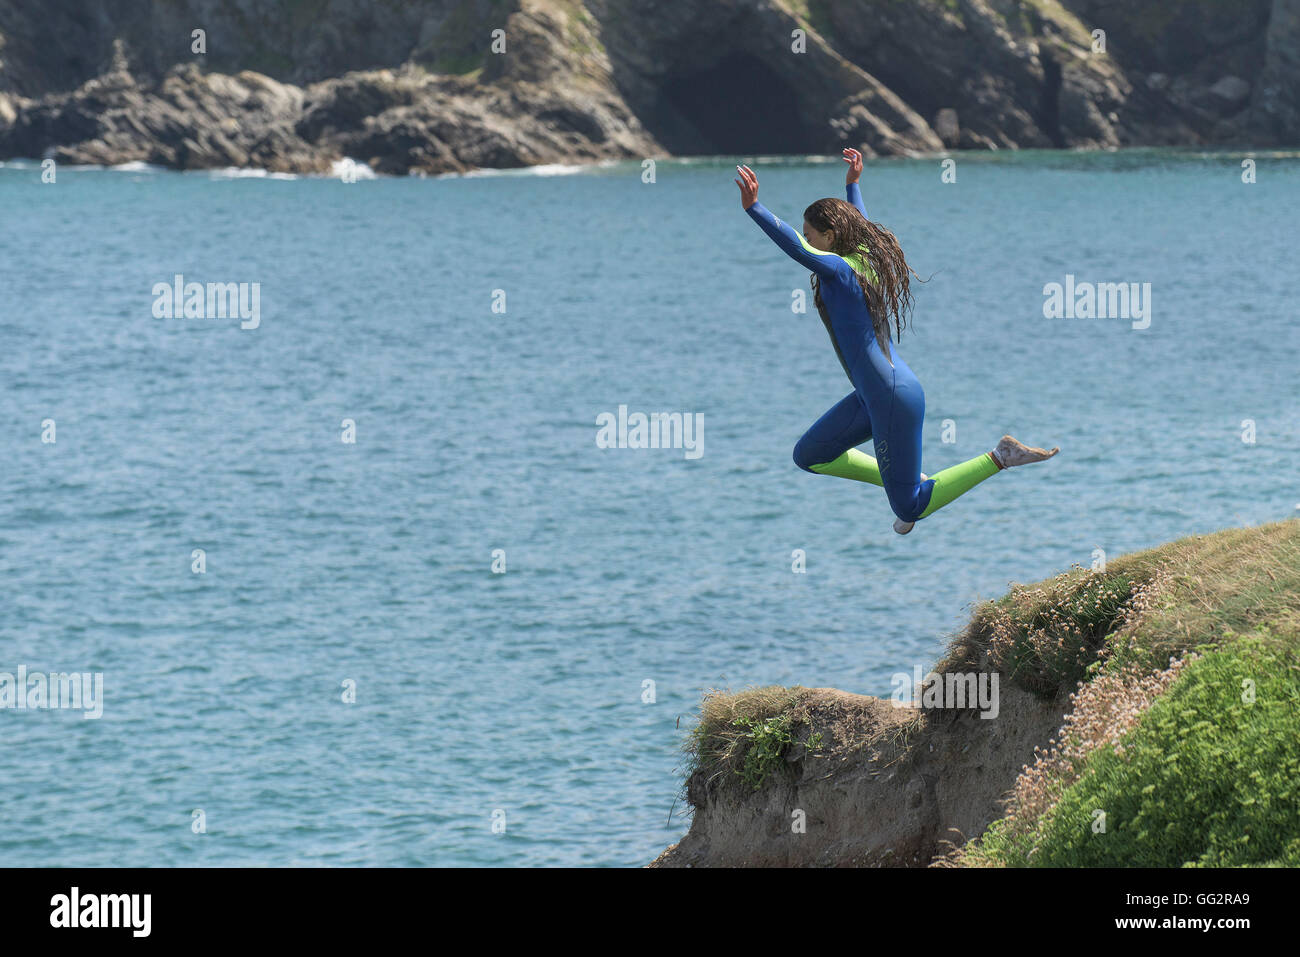 Désactivation d'un jeune adolescent au large des falaises, Newquay, Cornwall. Banque D'Images